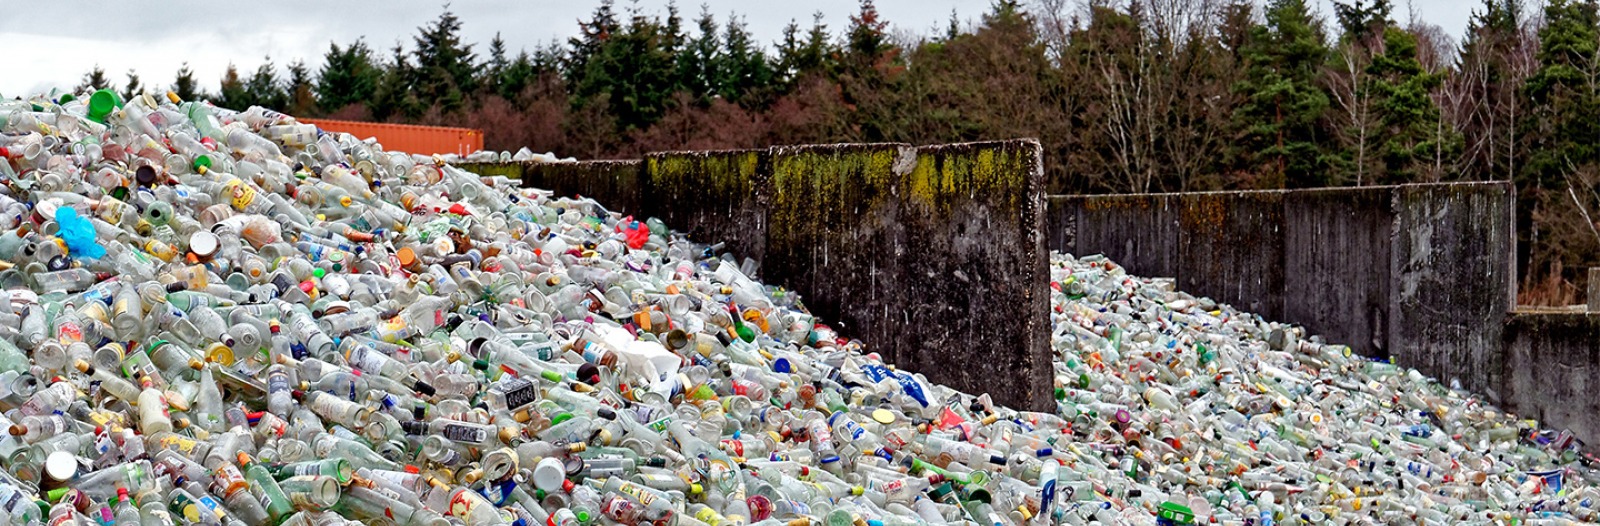 huge piles of trash at a landfill